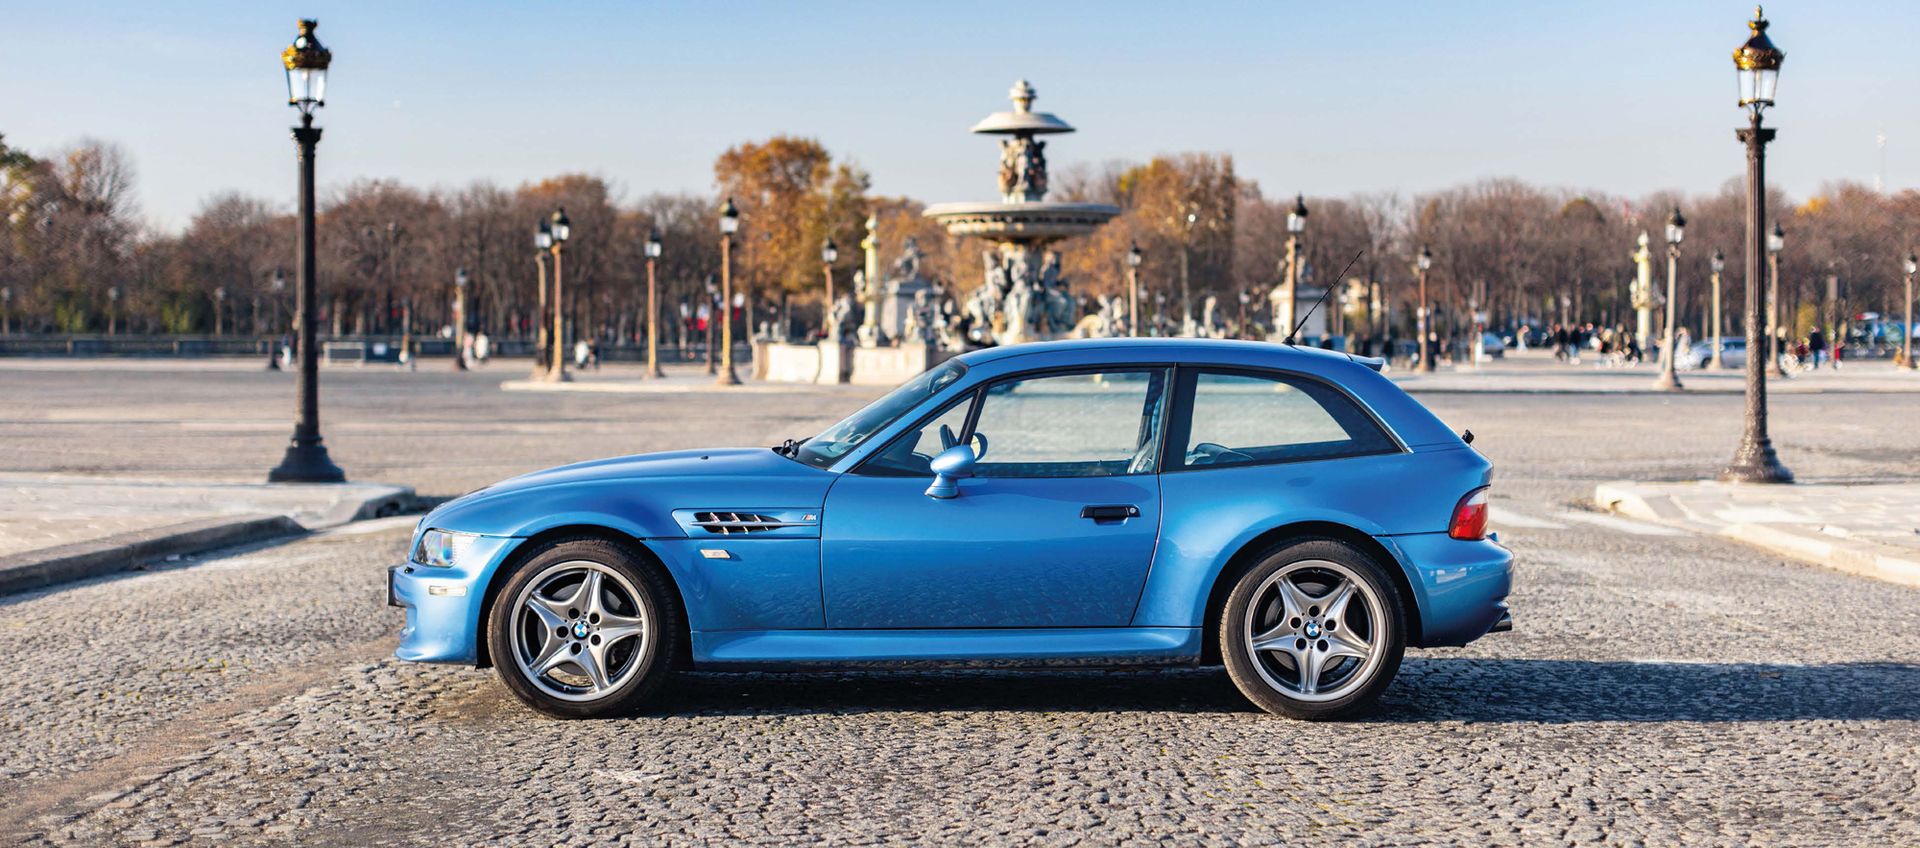 1998 BMW Z3M coupé 
Meno di 69.000 km certificati

La BMW più leggendaria degli &hellip;